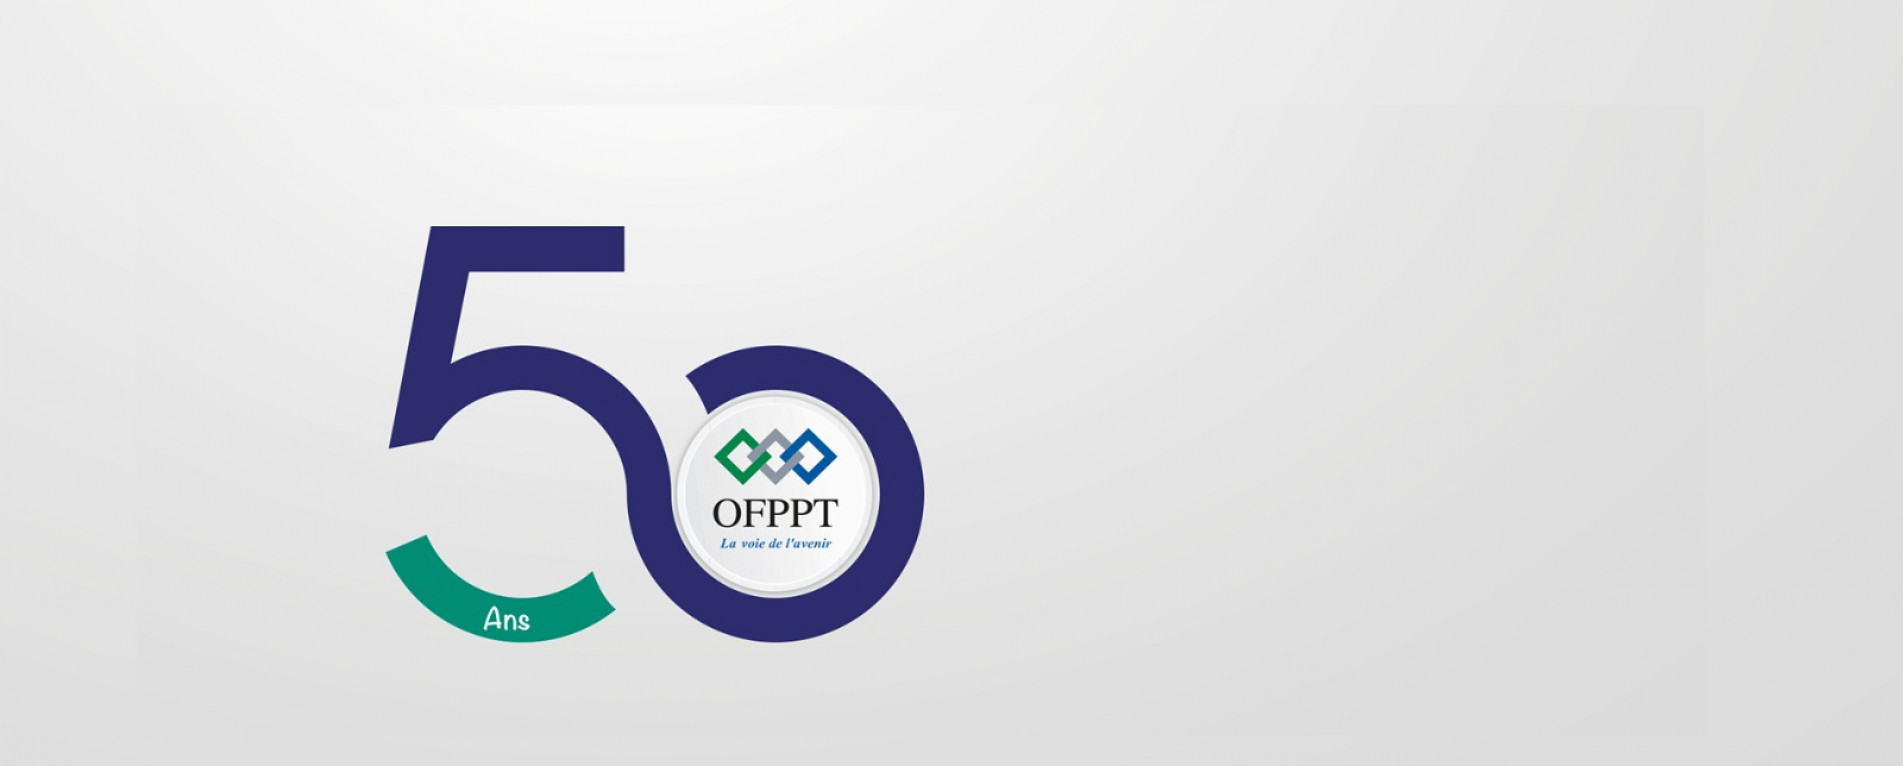 OFPPT : Un demi siècle d'engagement pour un Maroc des compétences